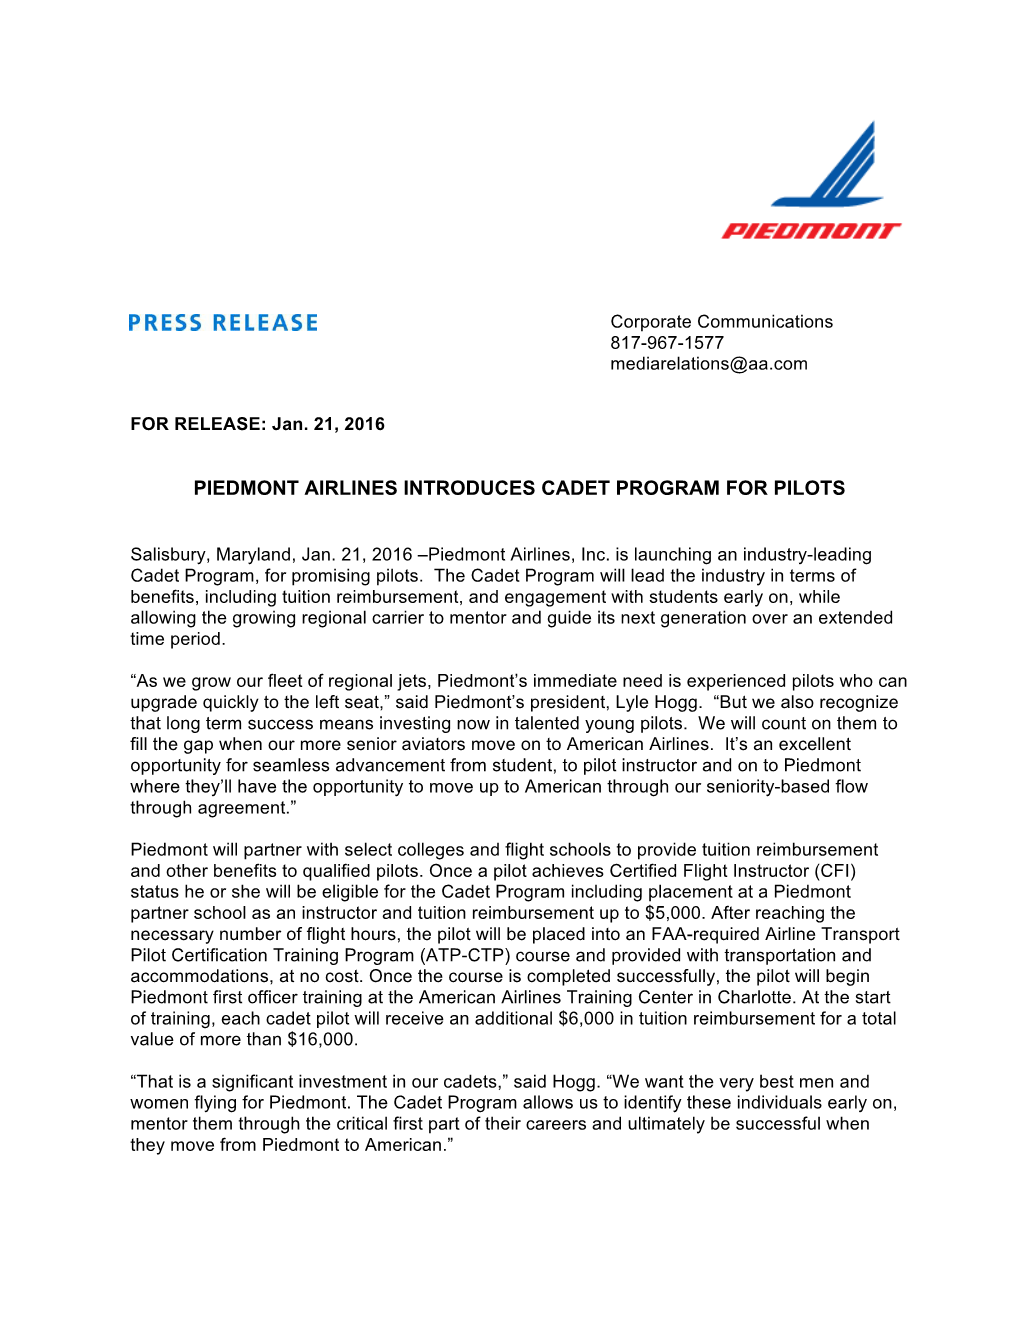 Piedmont Airlines Introduces Cadet Program for Pilots